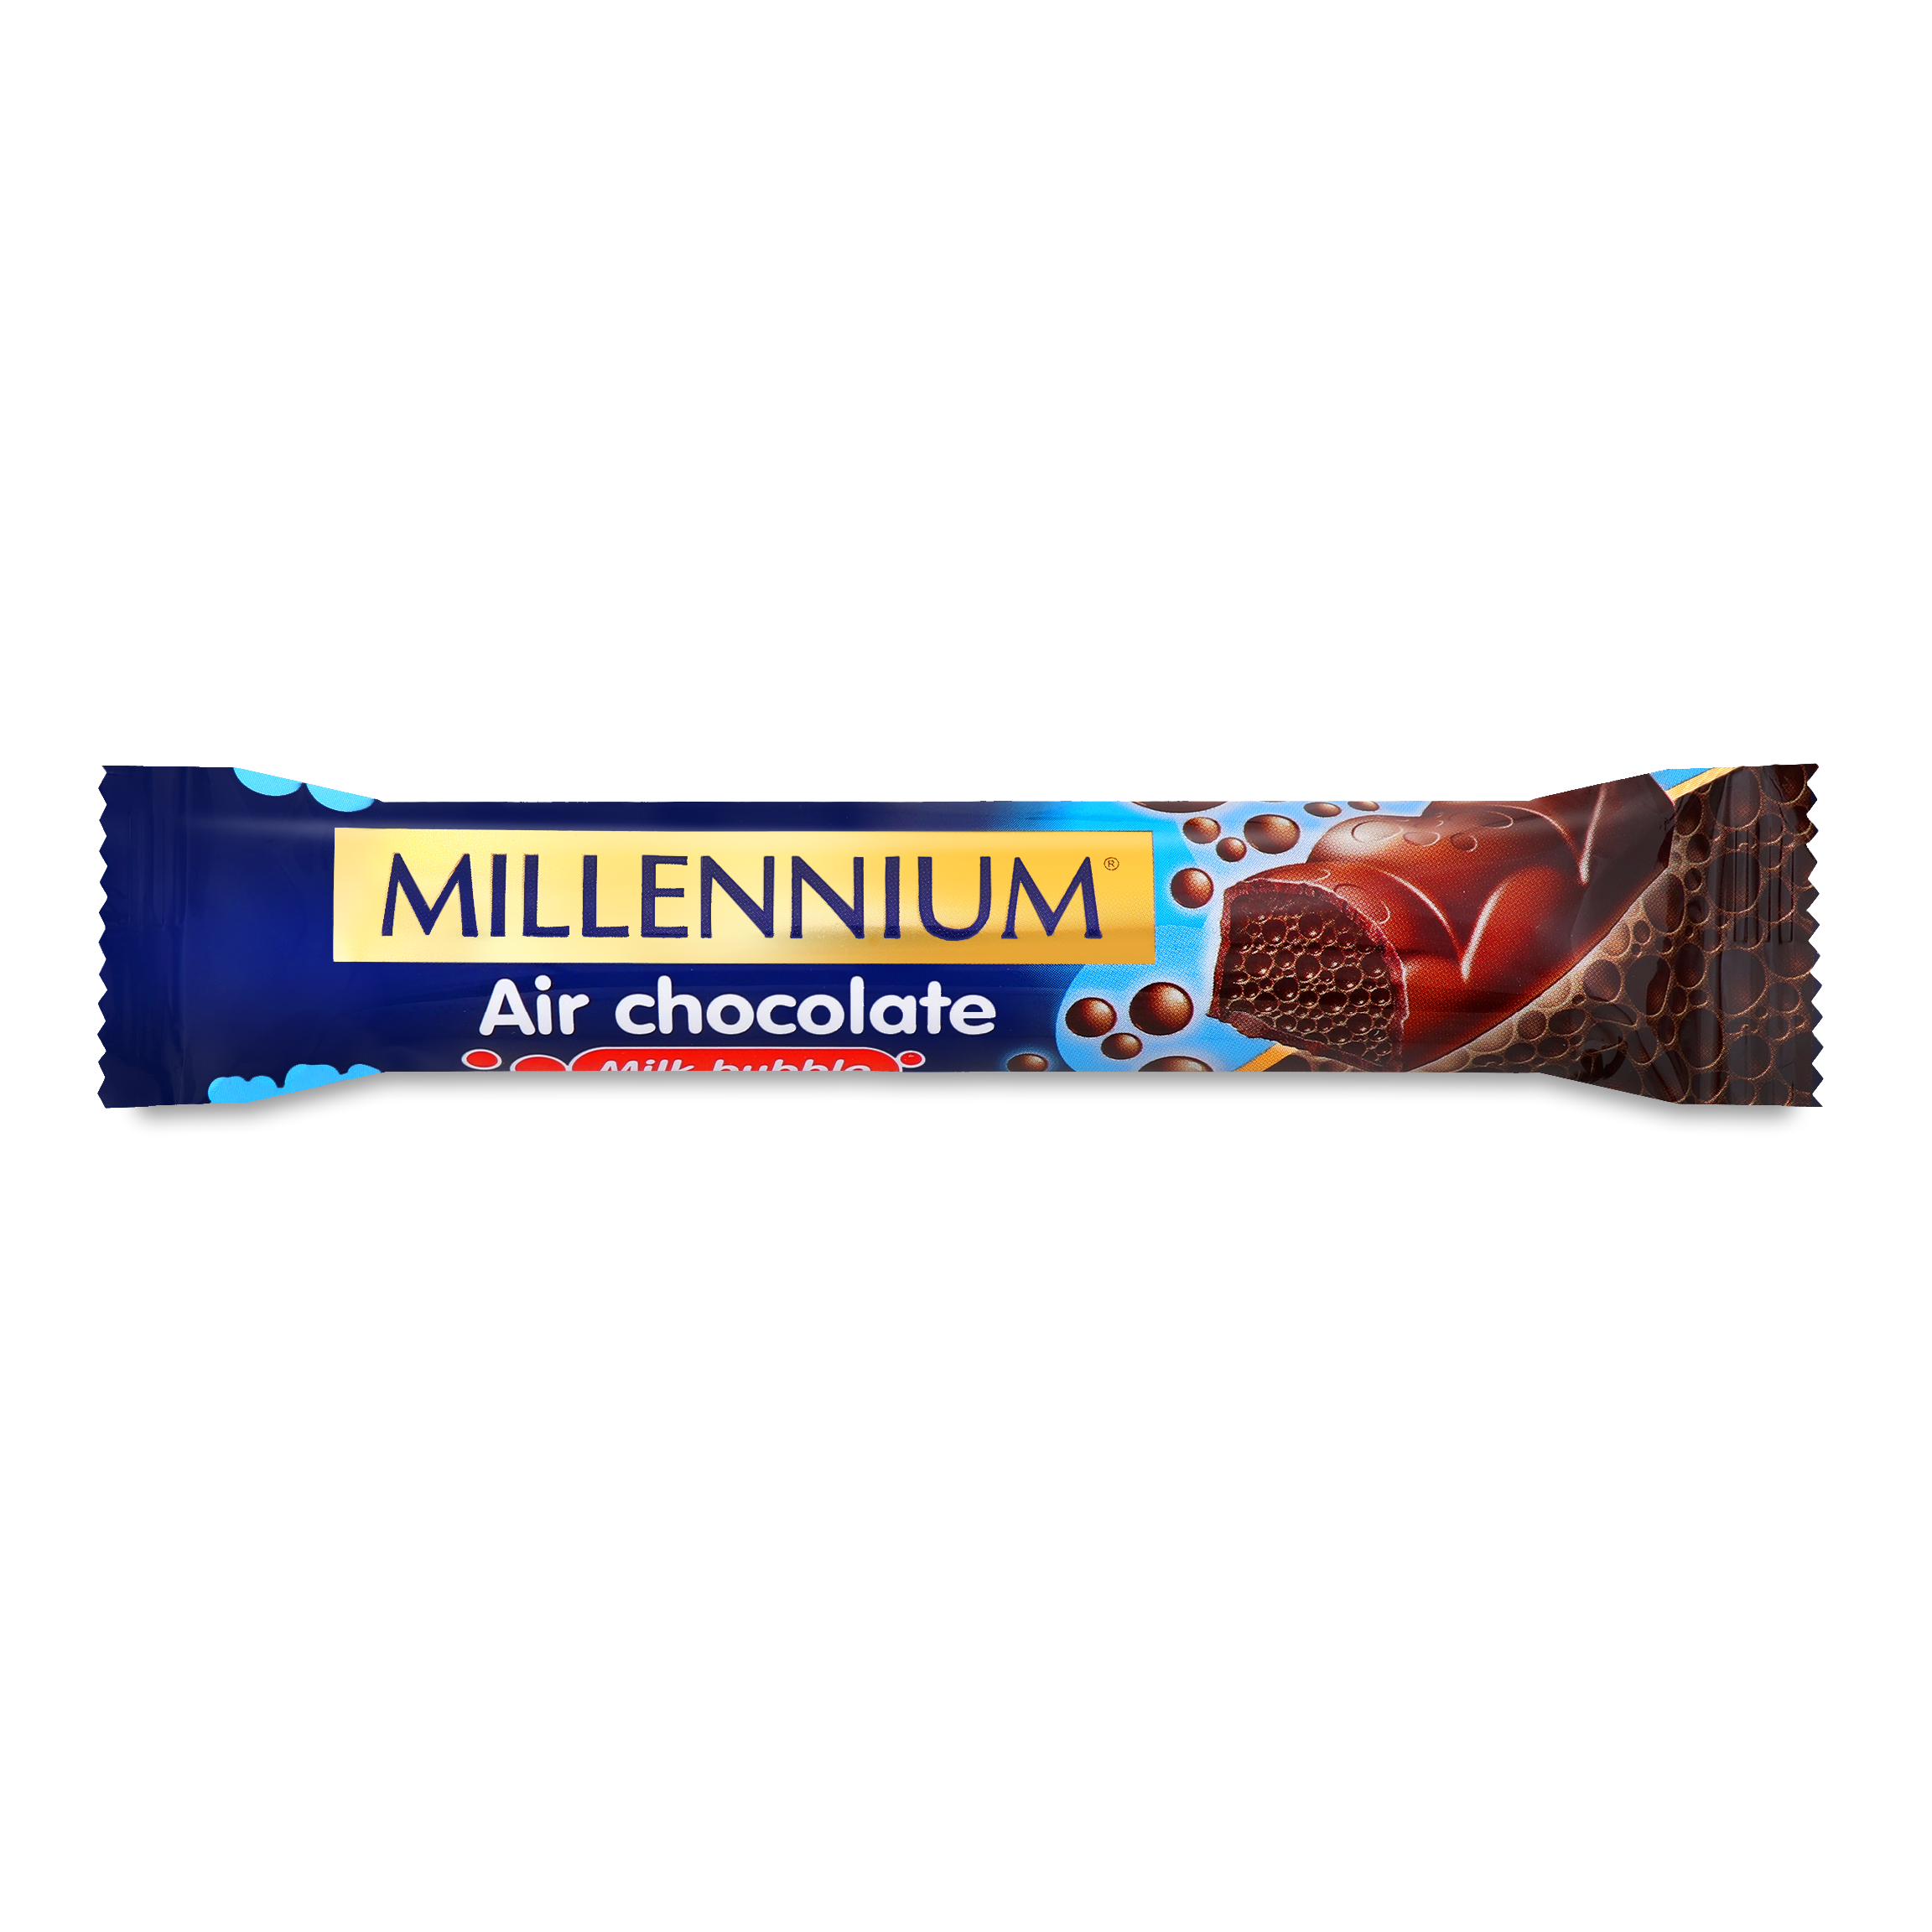 Millennium Aerated Milk Chocolate 32g